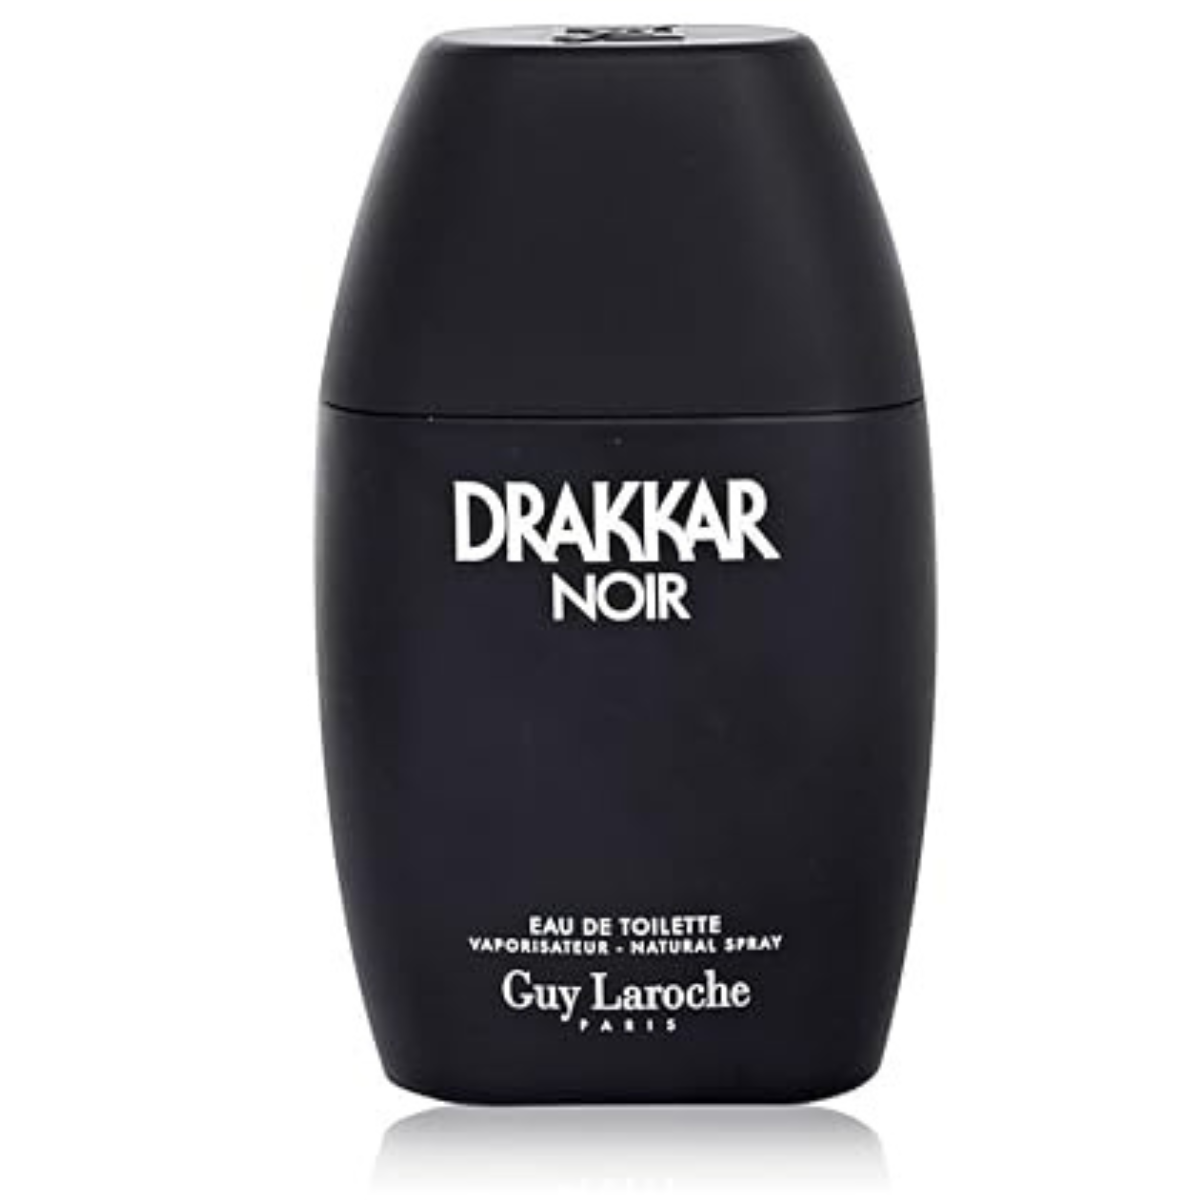 Guy Laroche Drakkar Noir 100 ml for men perfume-2